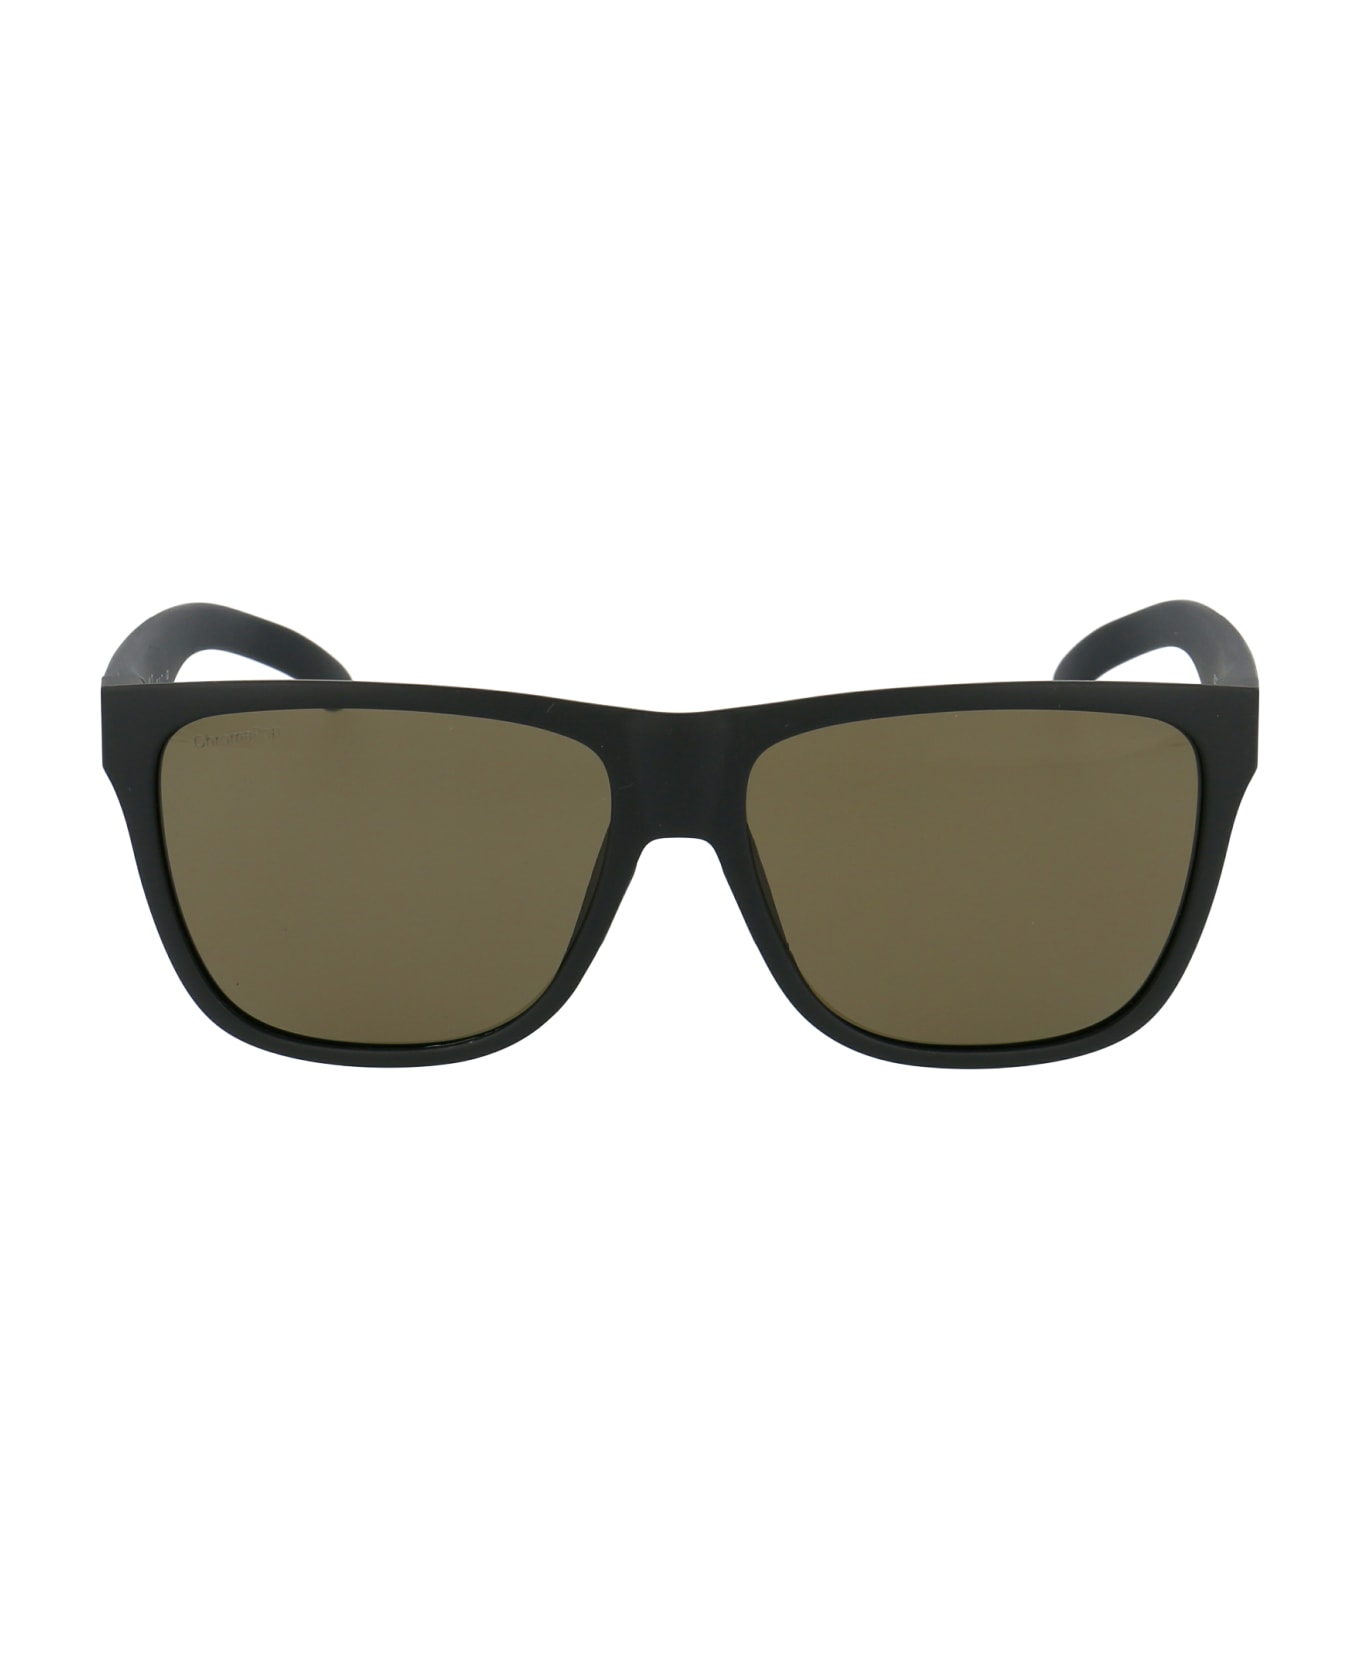 Smith Lowdown Xl 2 Sunglasses - 003L7 MATT BLACK